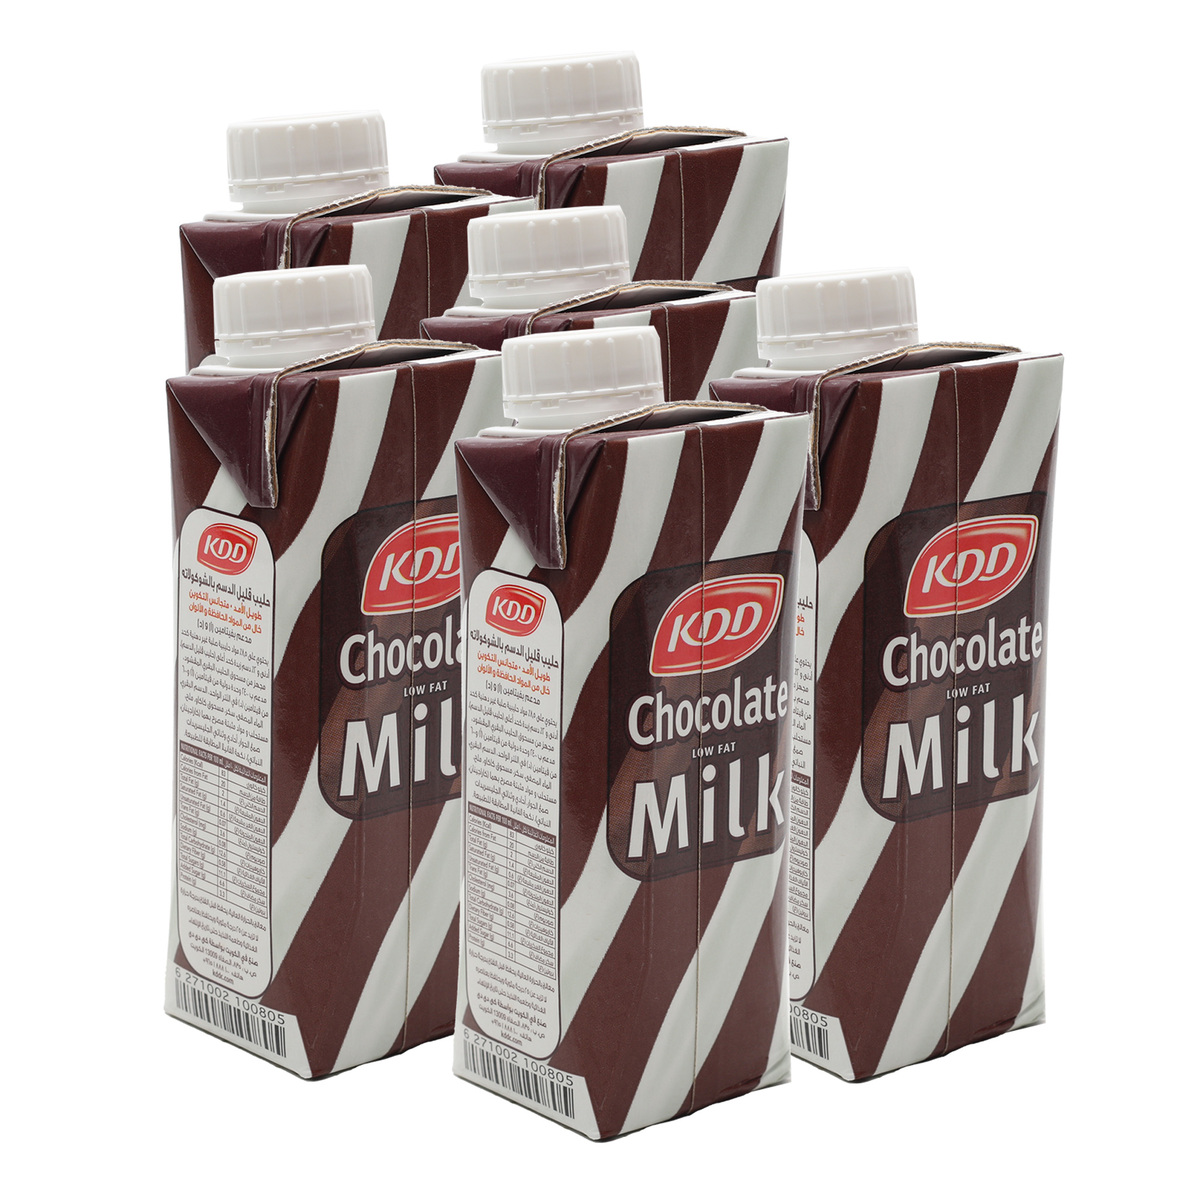 KDD Chocolate Milk Low Fat 250ml